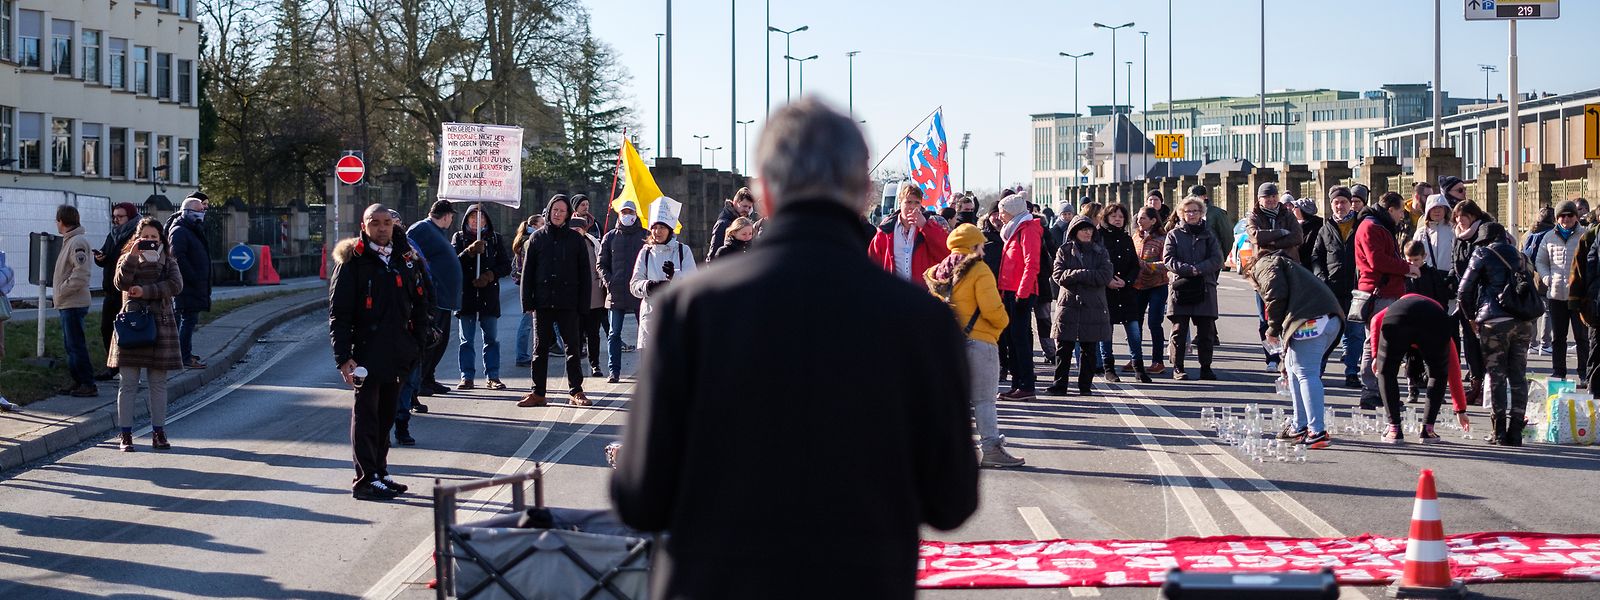 Kundgebung auf der „Rout Bréck“ gegen die Corona-Politik.